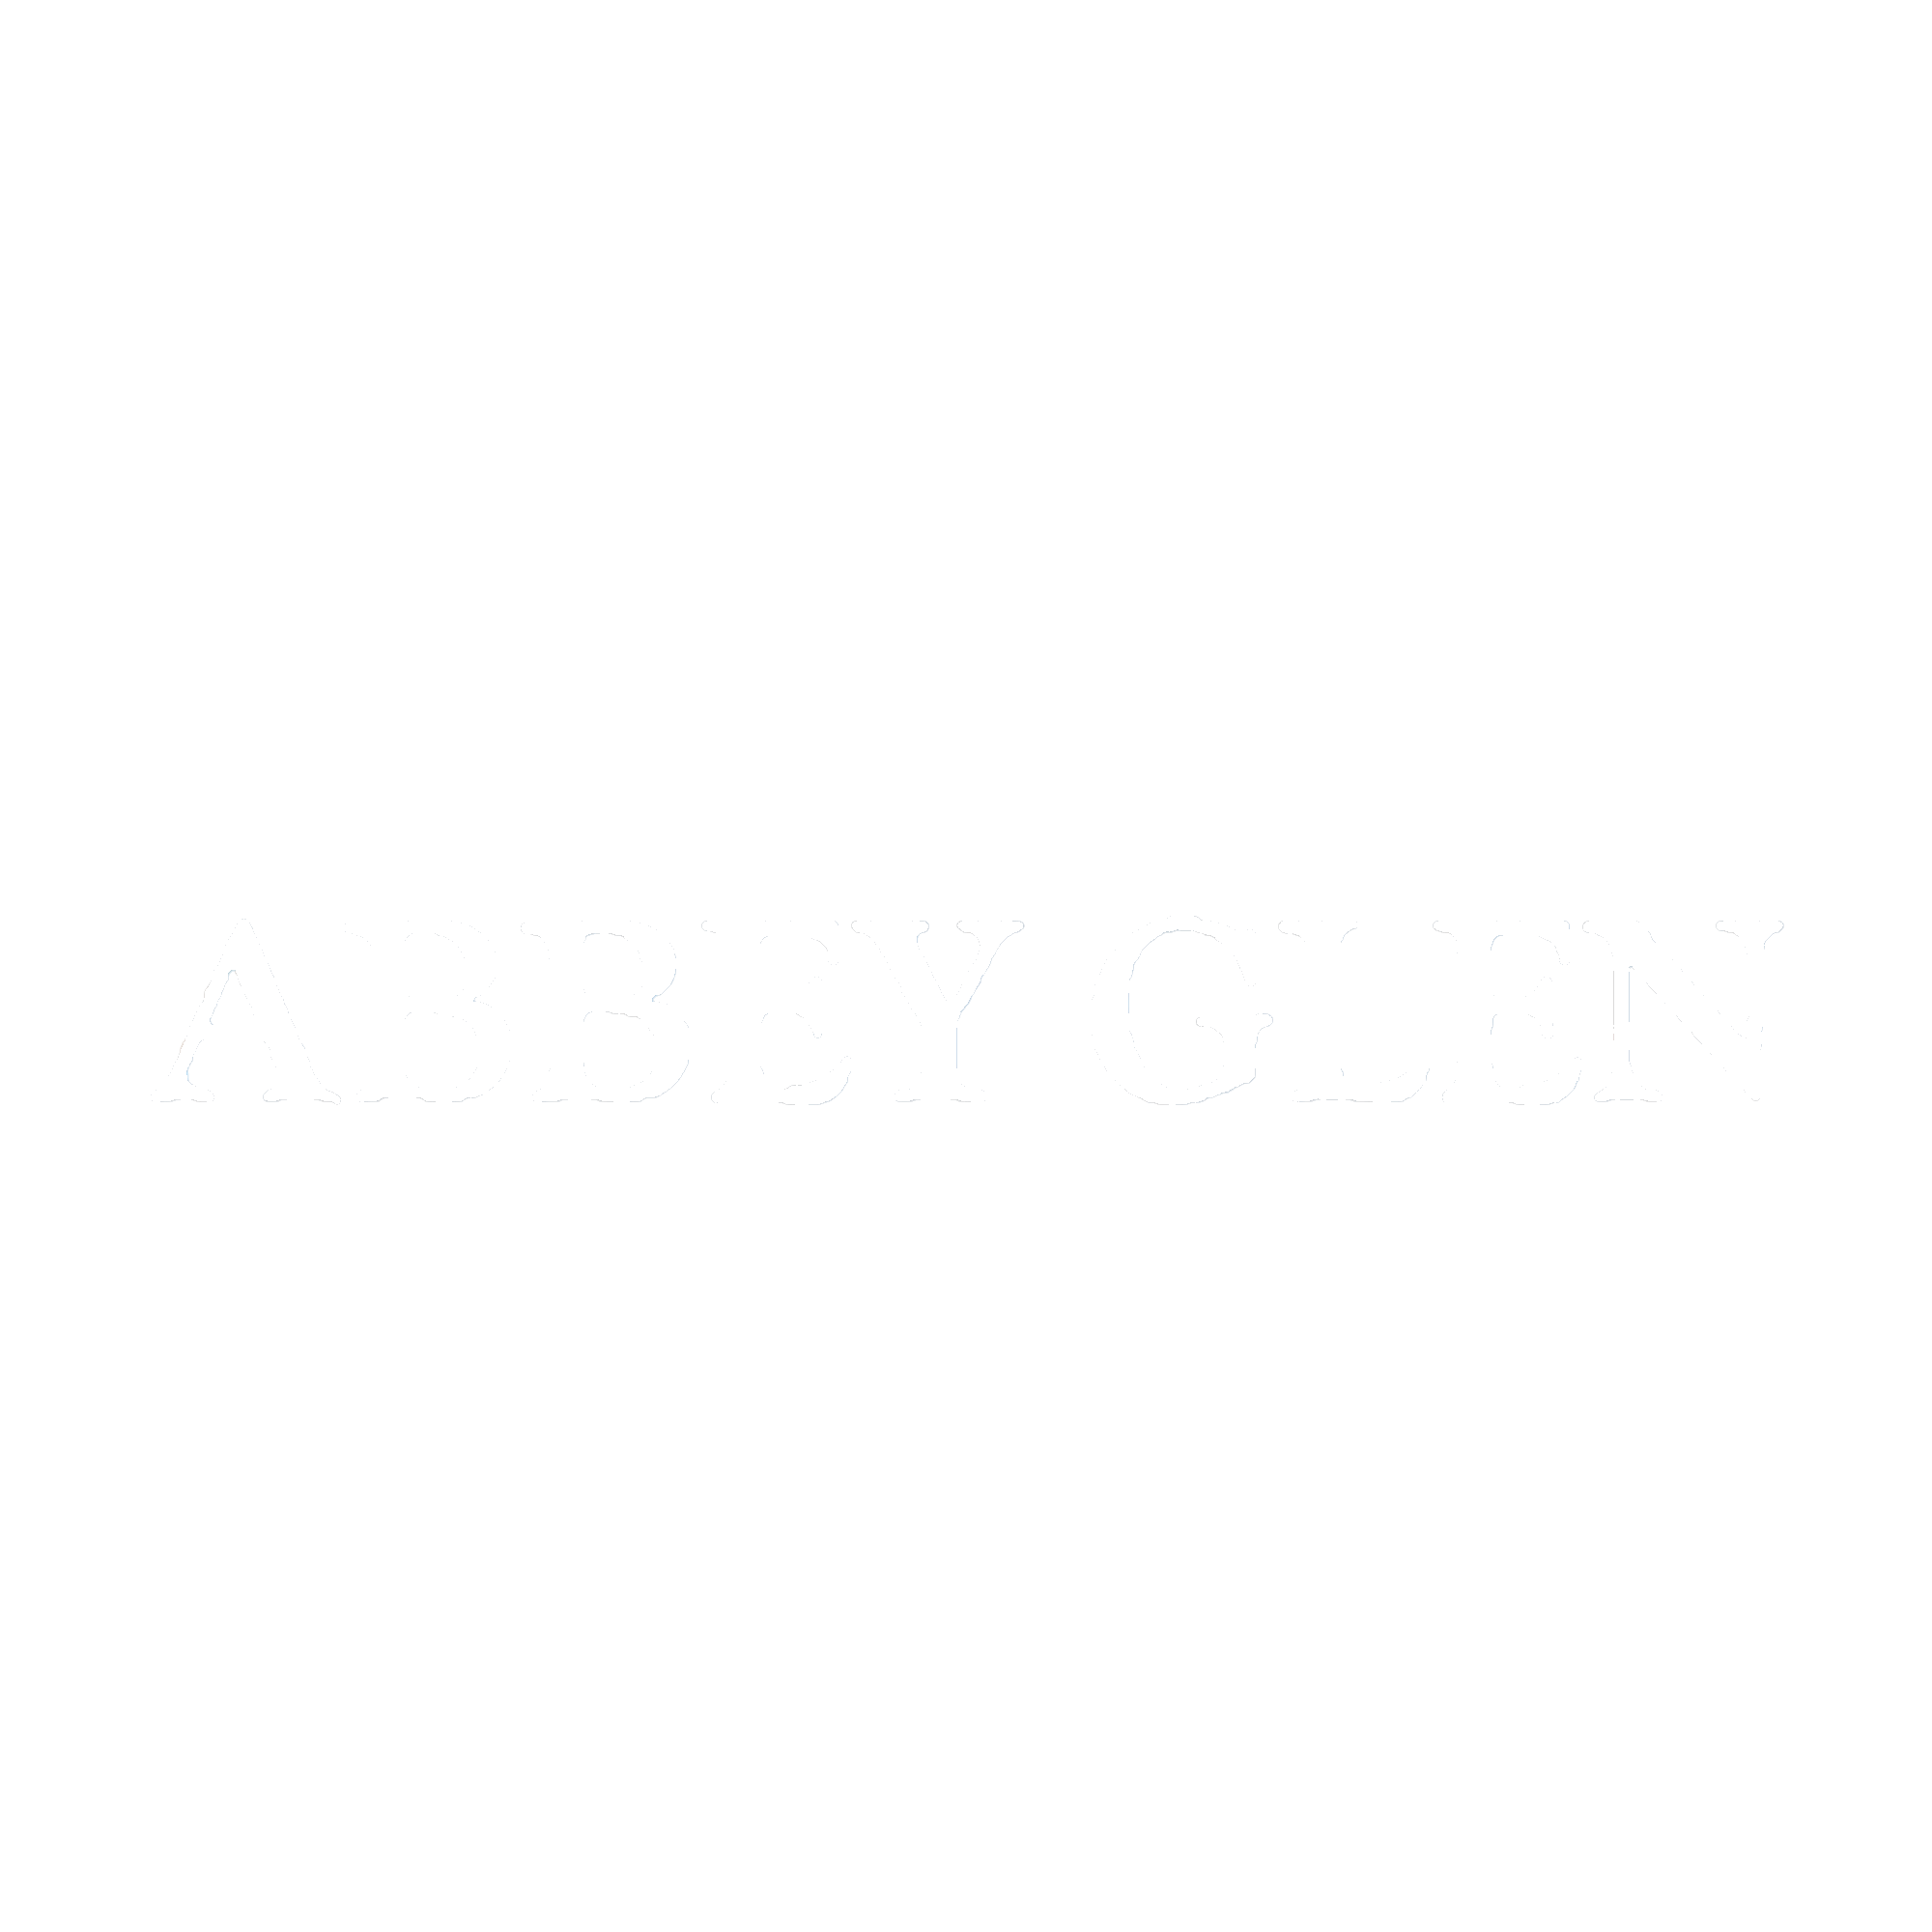 Abbey Glen